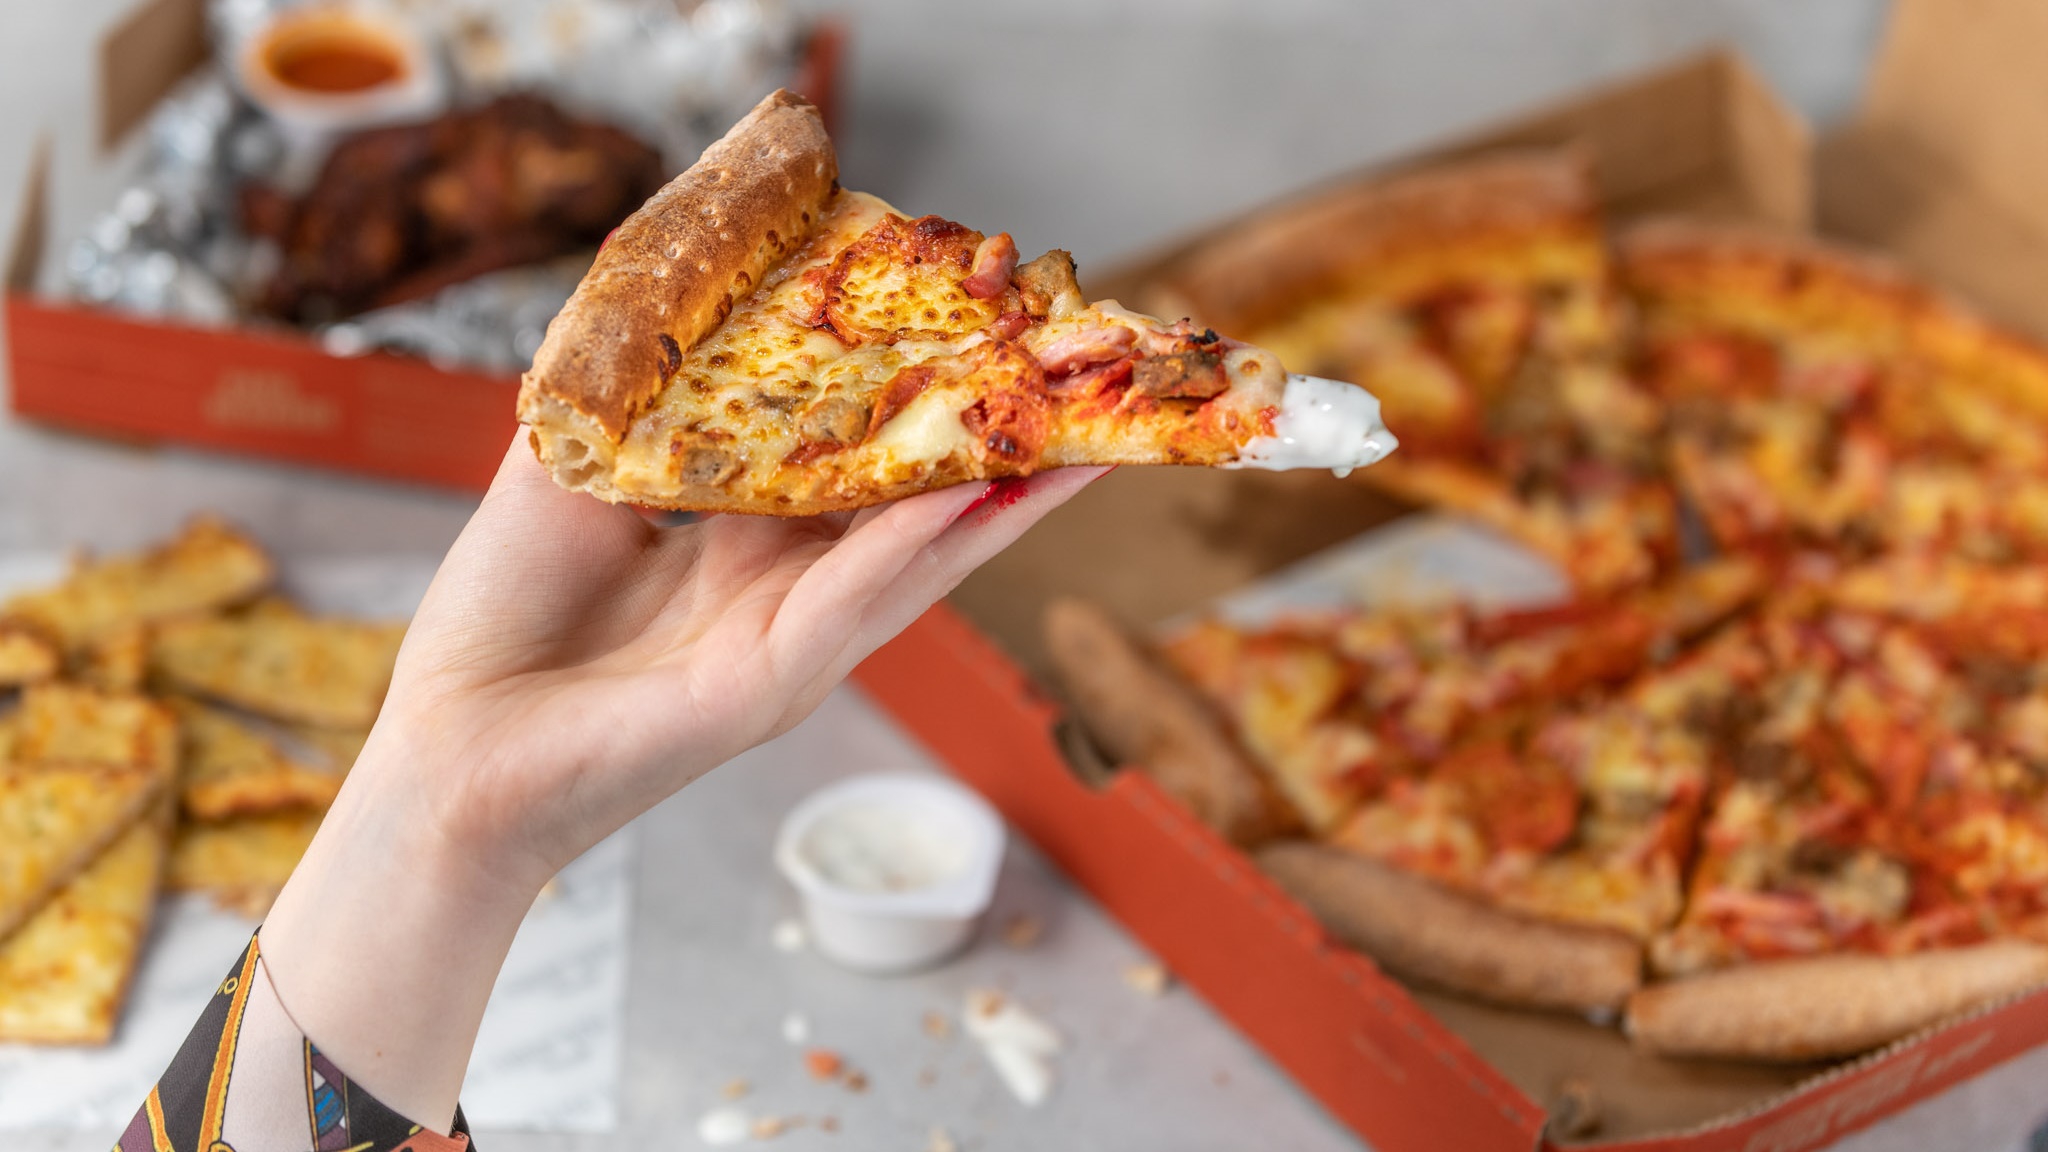 Nếu tôi là người muốn giảm cân, liệu có nên ăn pizza hải sản không?

Các câu hỏi này liên quan đến thông tin về lượng calo trong pizza hải sản, nguyên liệu, cách giảm calo và tác động của các yếu tố khác lên lượng calo trong món ăn này. Khi được trả lời một cách đầy đủ, các câu trả lời này có thể tạo thành một bài viết bao quát về pizza hải sản và lượng calo.